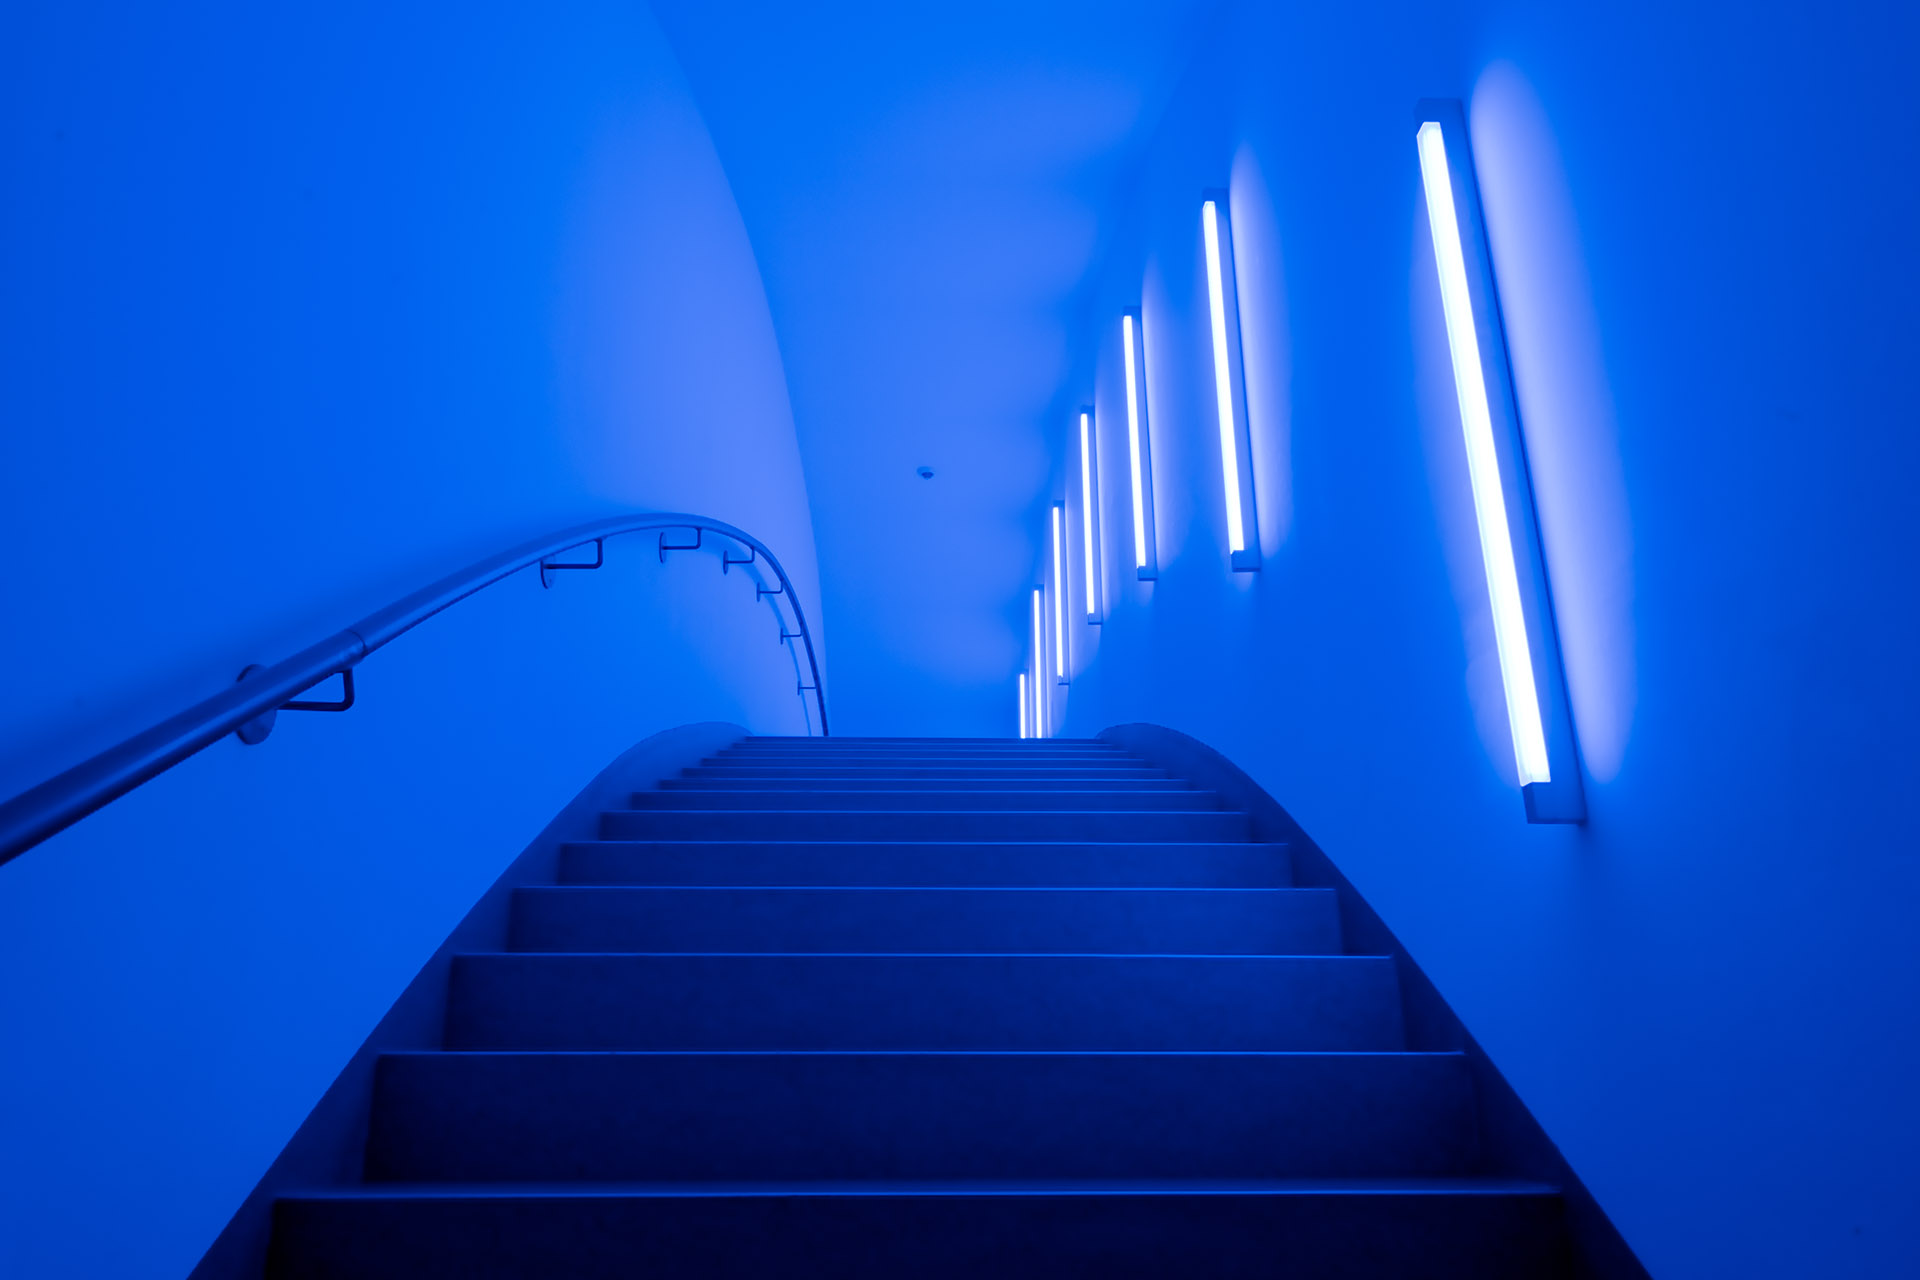 Architekturfotografie Fotograf Studio Oberfranken Verbindungsbrücke von innen in blauem LED-Licht, Gebäude Zuckerhut. Feigfotodesign